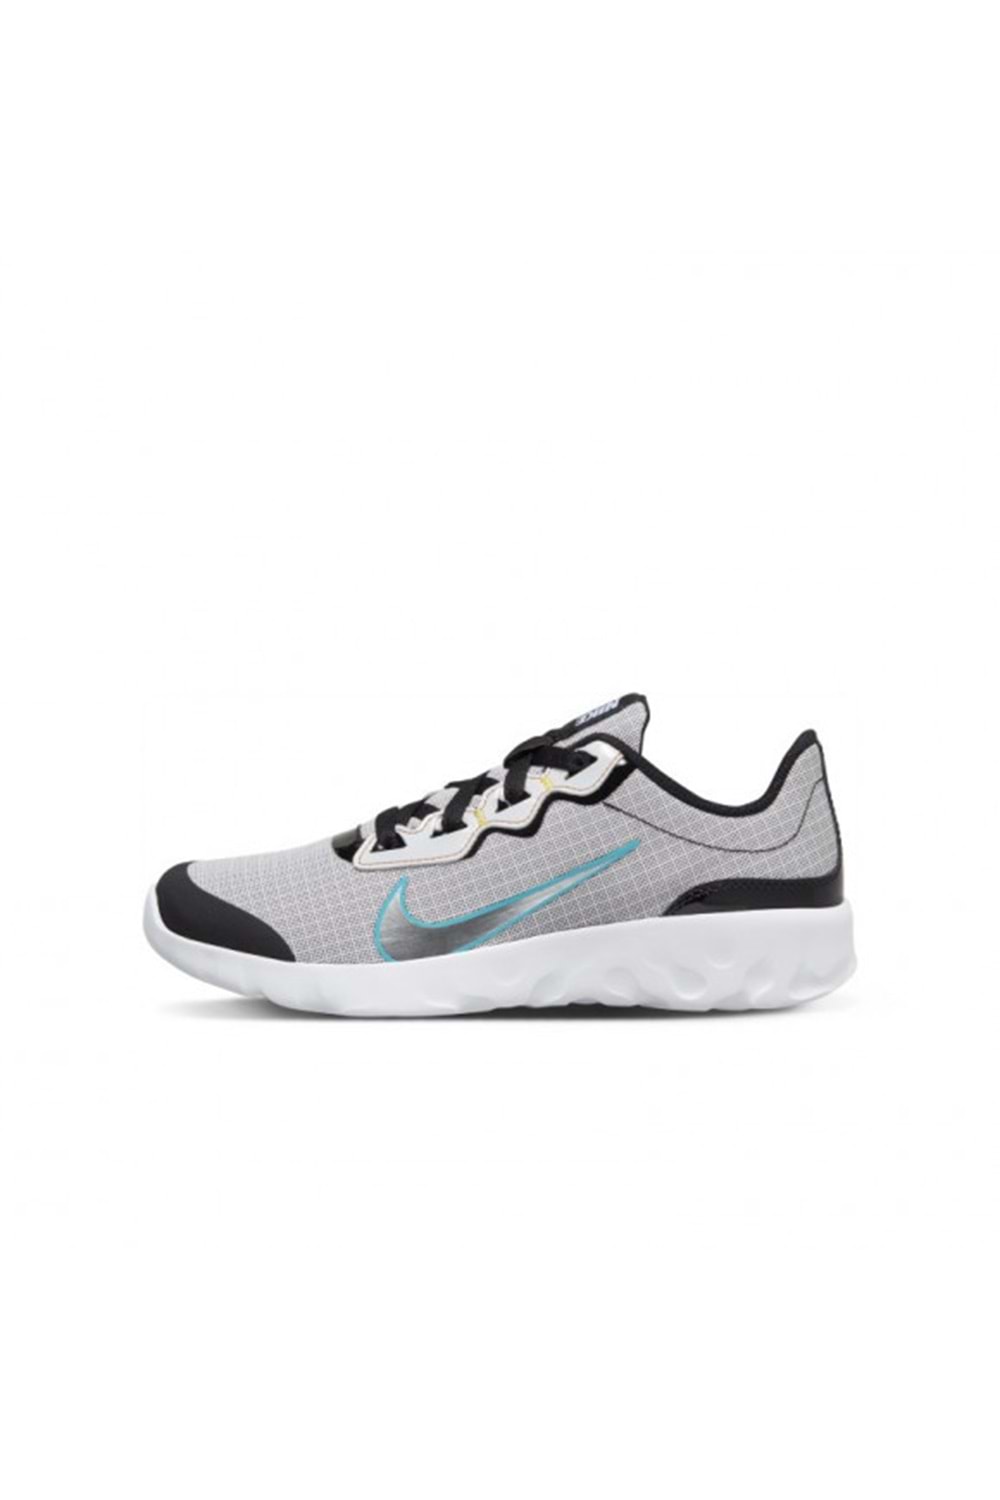 Nike Explore Strada D2N Genç Koşu&Yürüyüş Ayakkabısı CJ2231-100